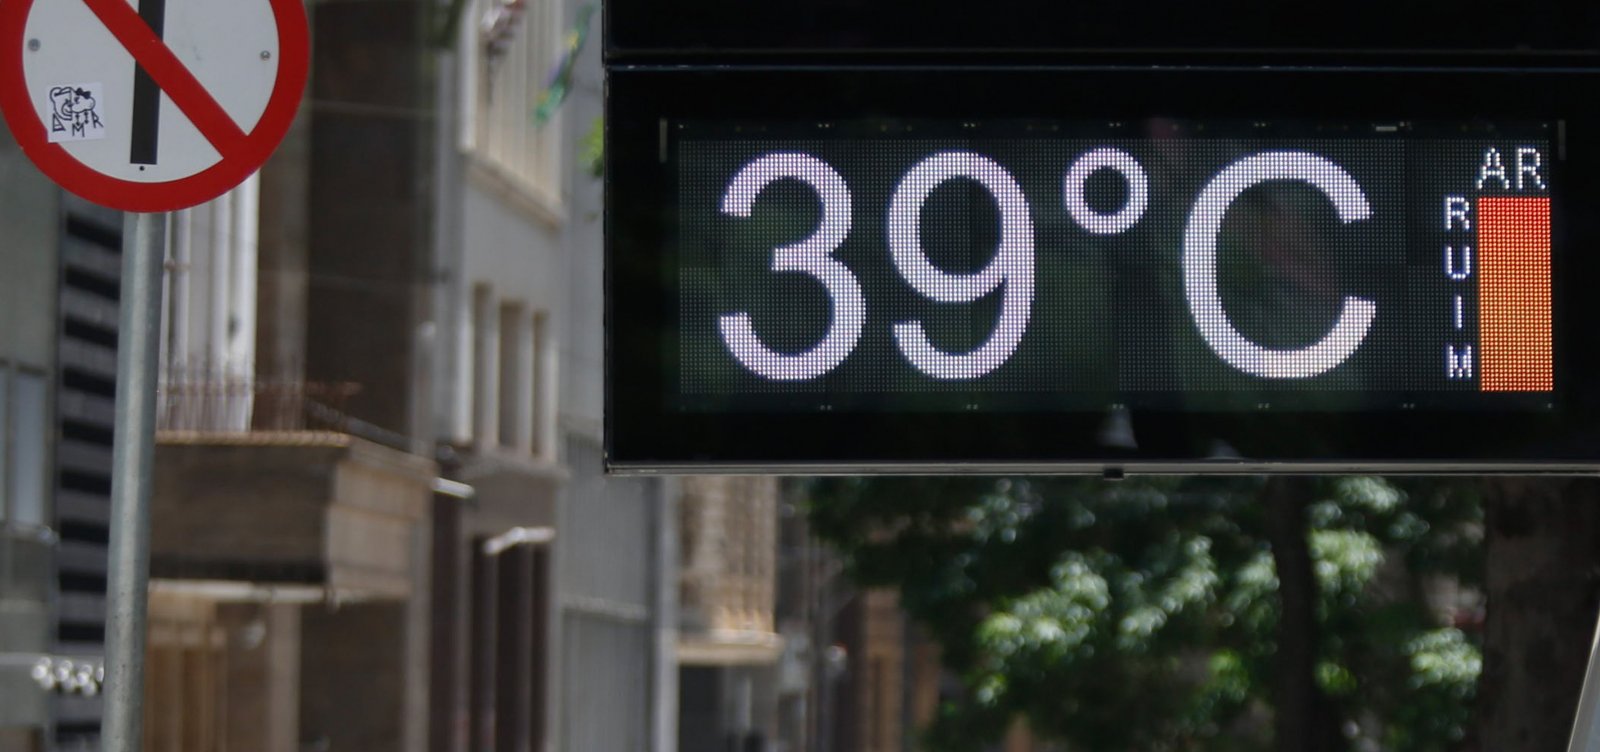 Onda de calor no Brasil deve durar até segunda semana de maio